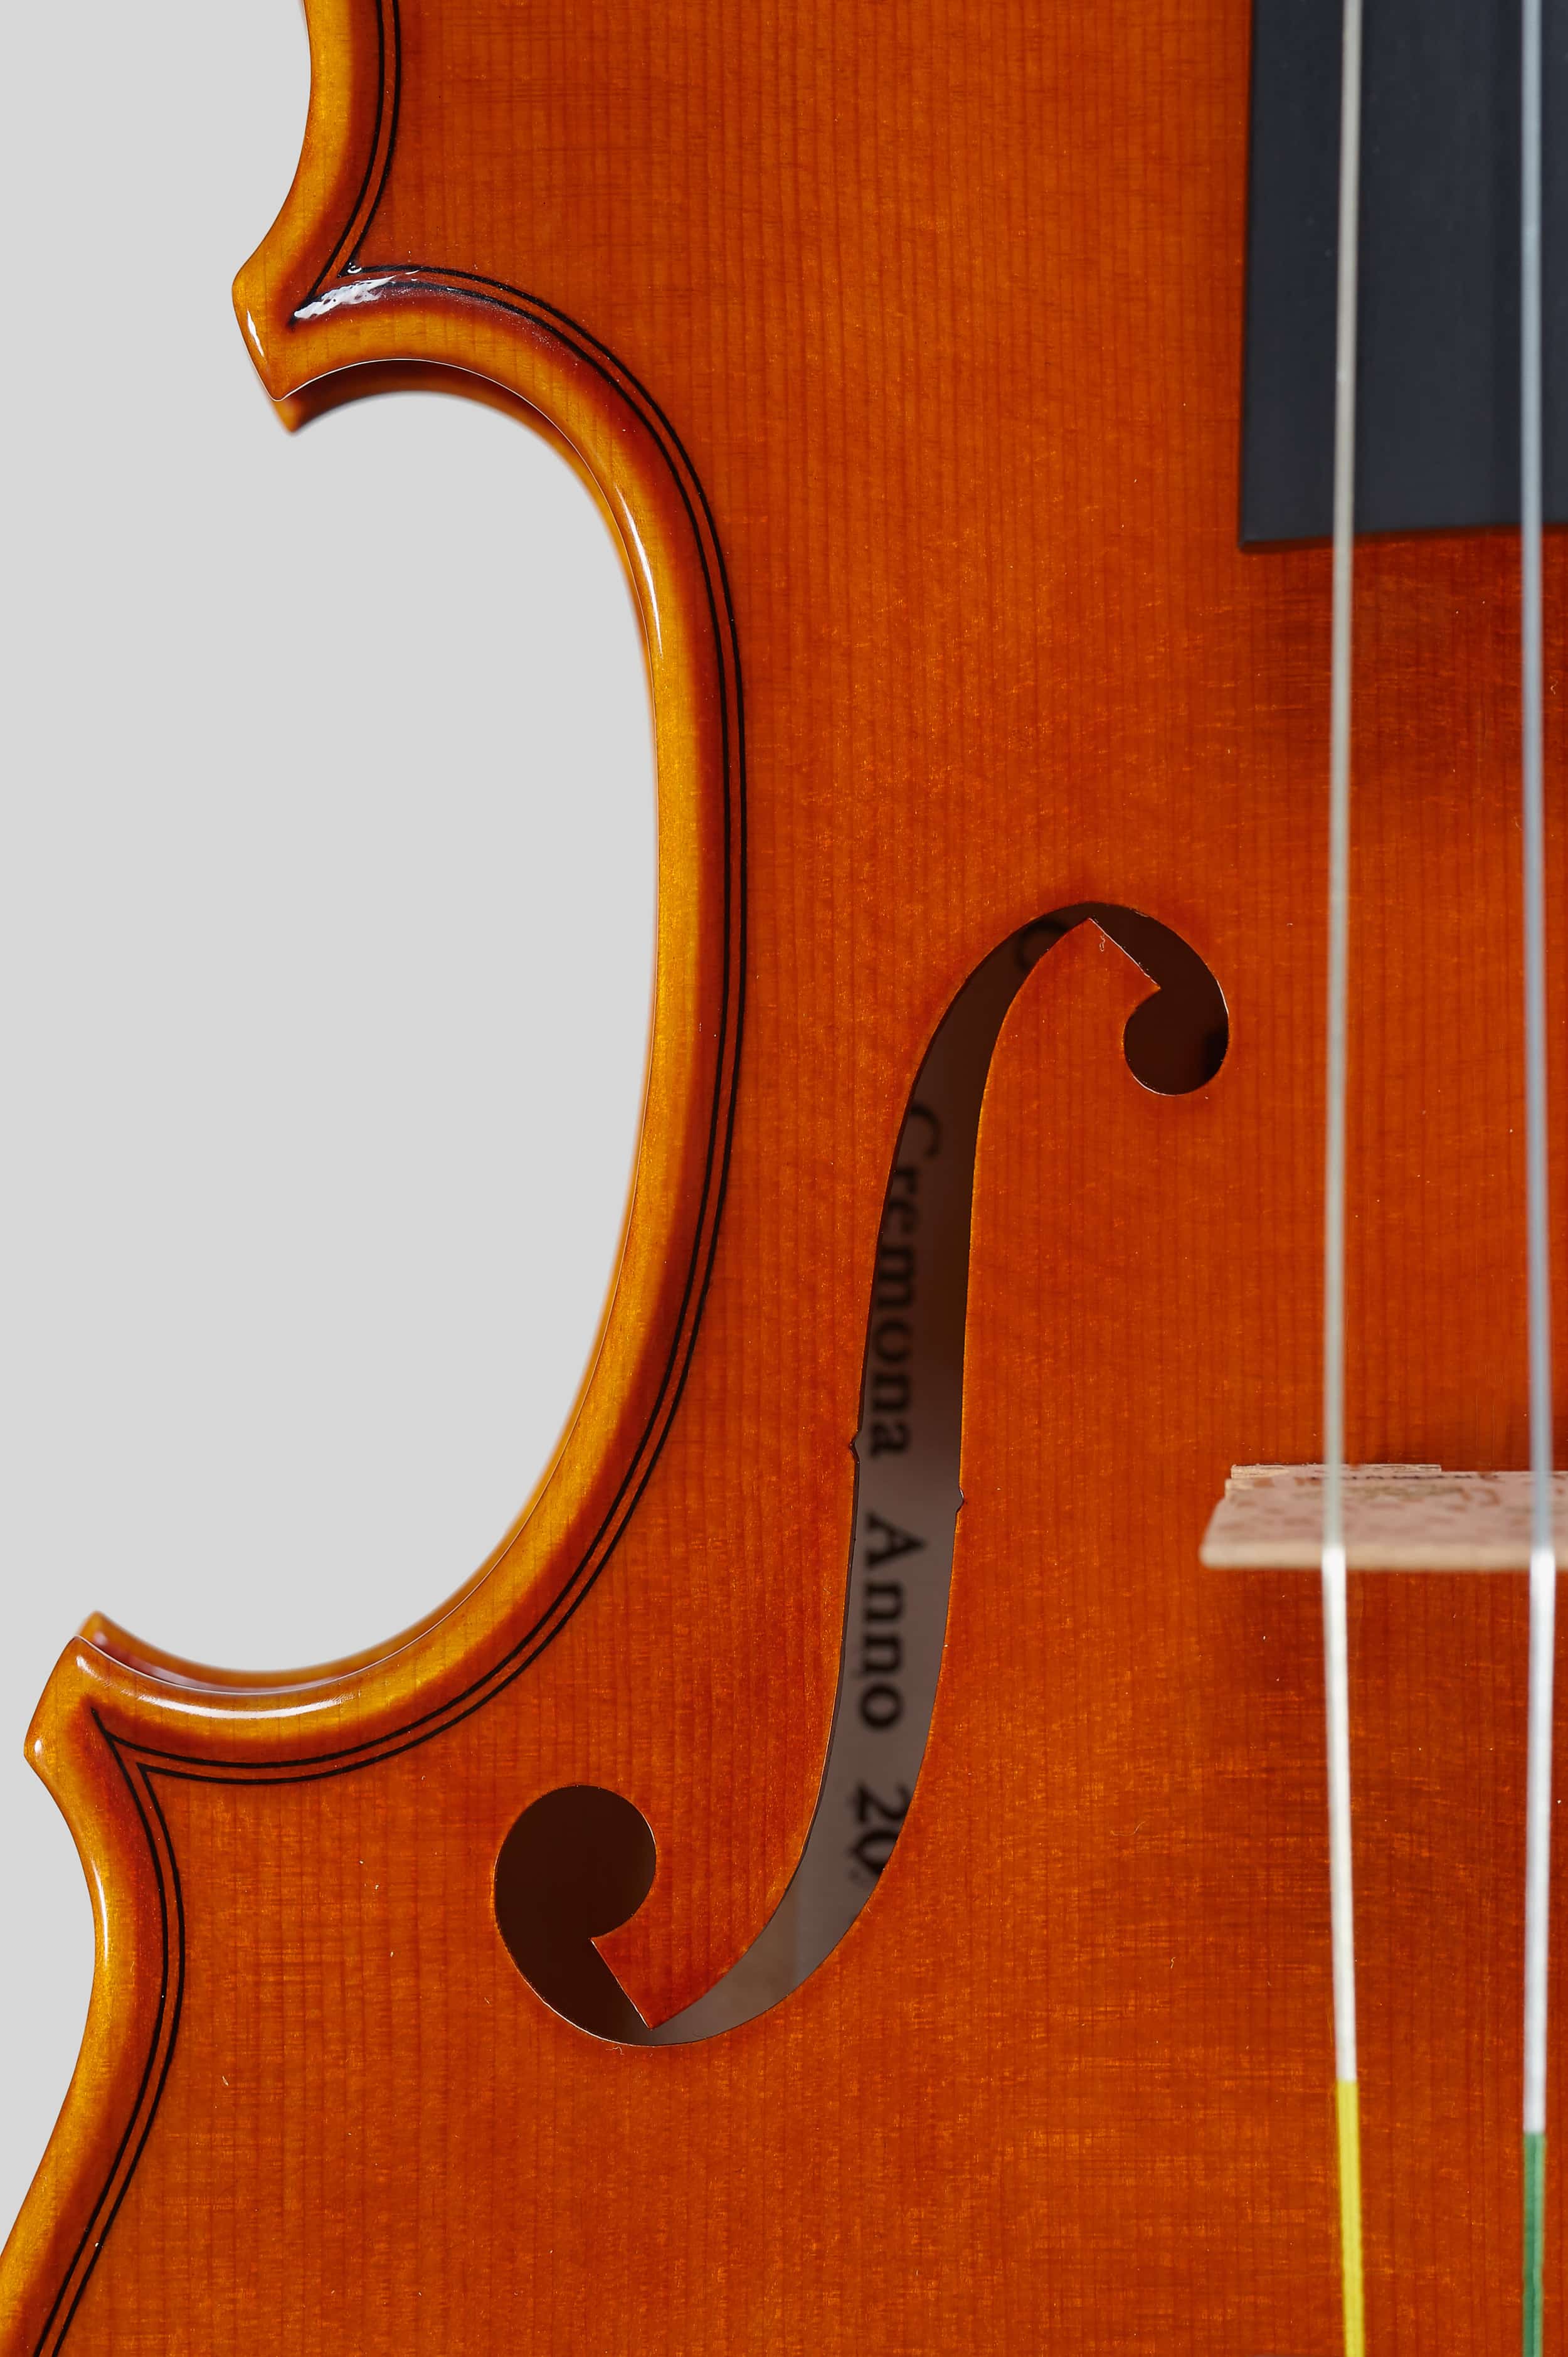 Anno 2014 – Violino modello stile A. Stradivari “Soil” 1714 - Effe